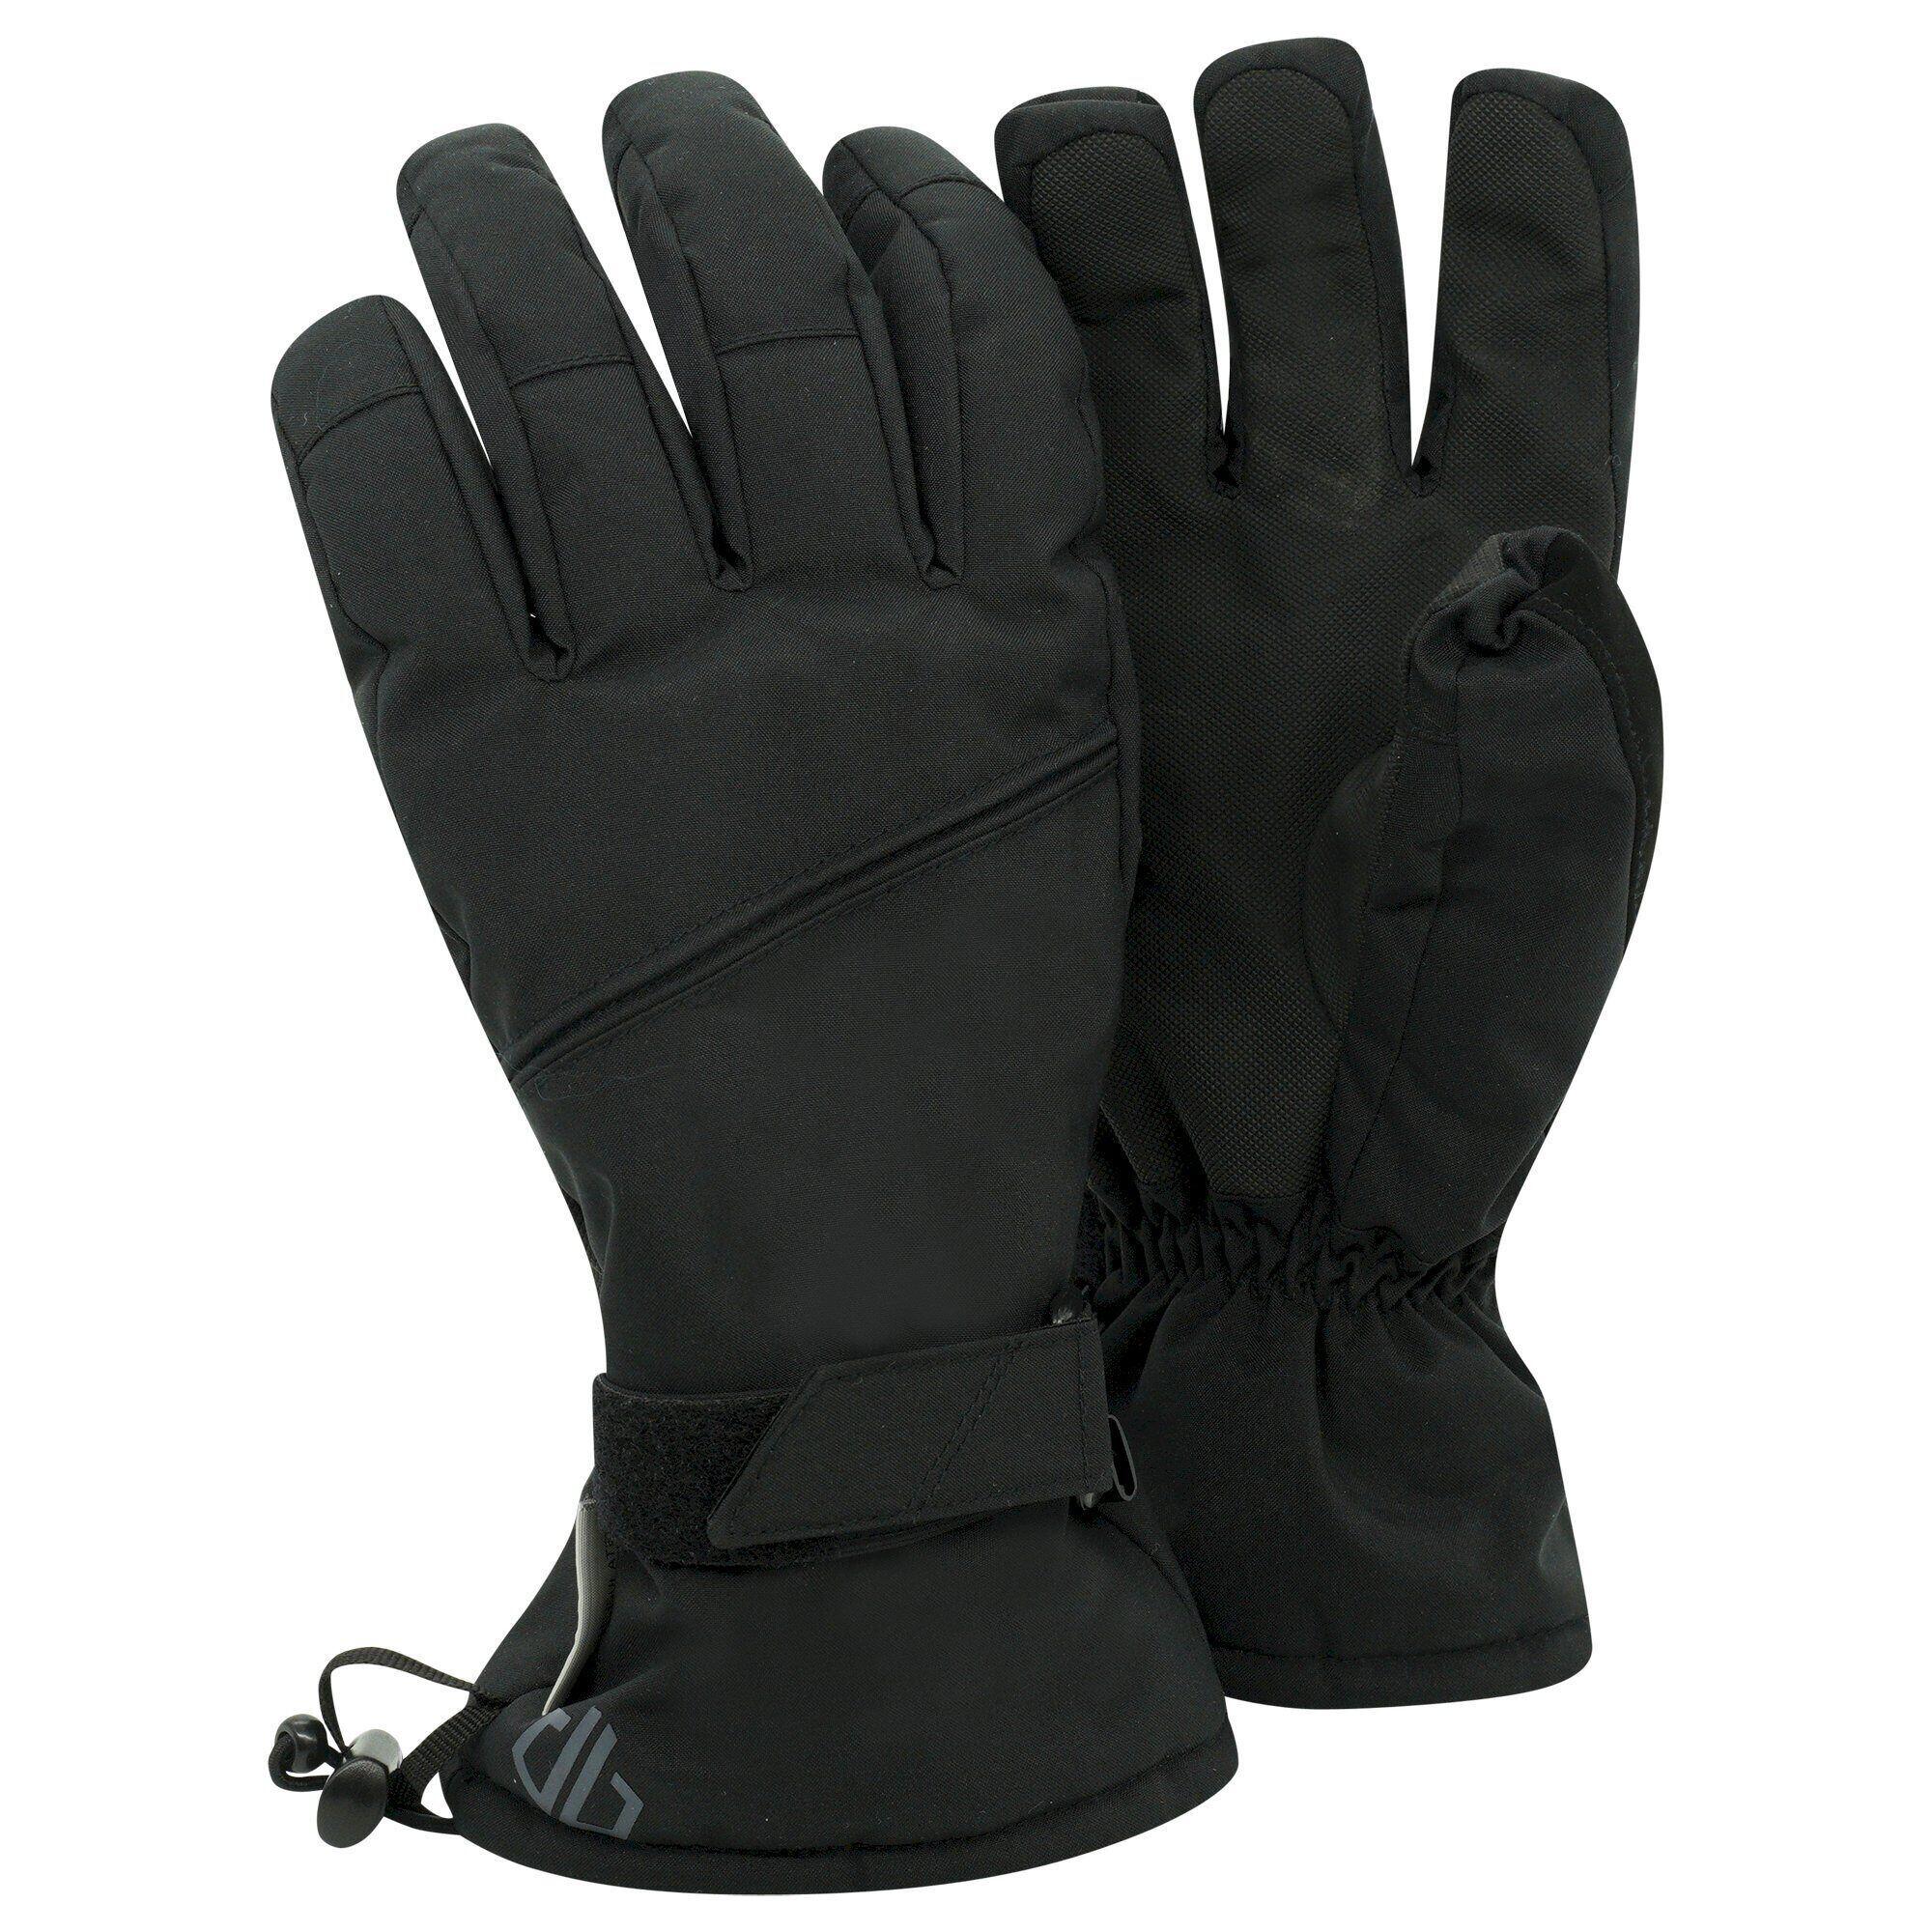 Unisex Adult Hand In Waterproof Ski Gloves (Black) 2/4